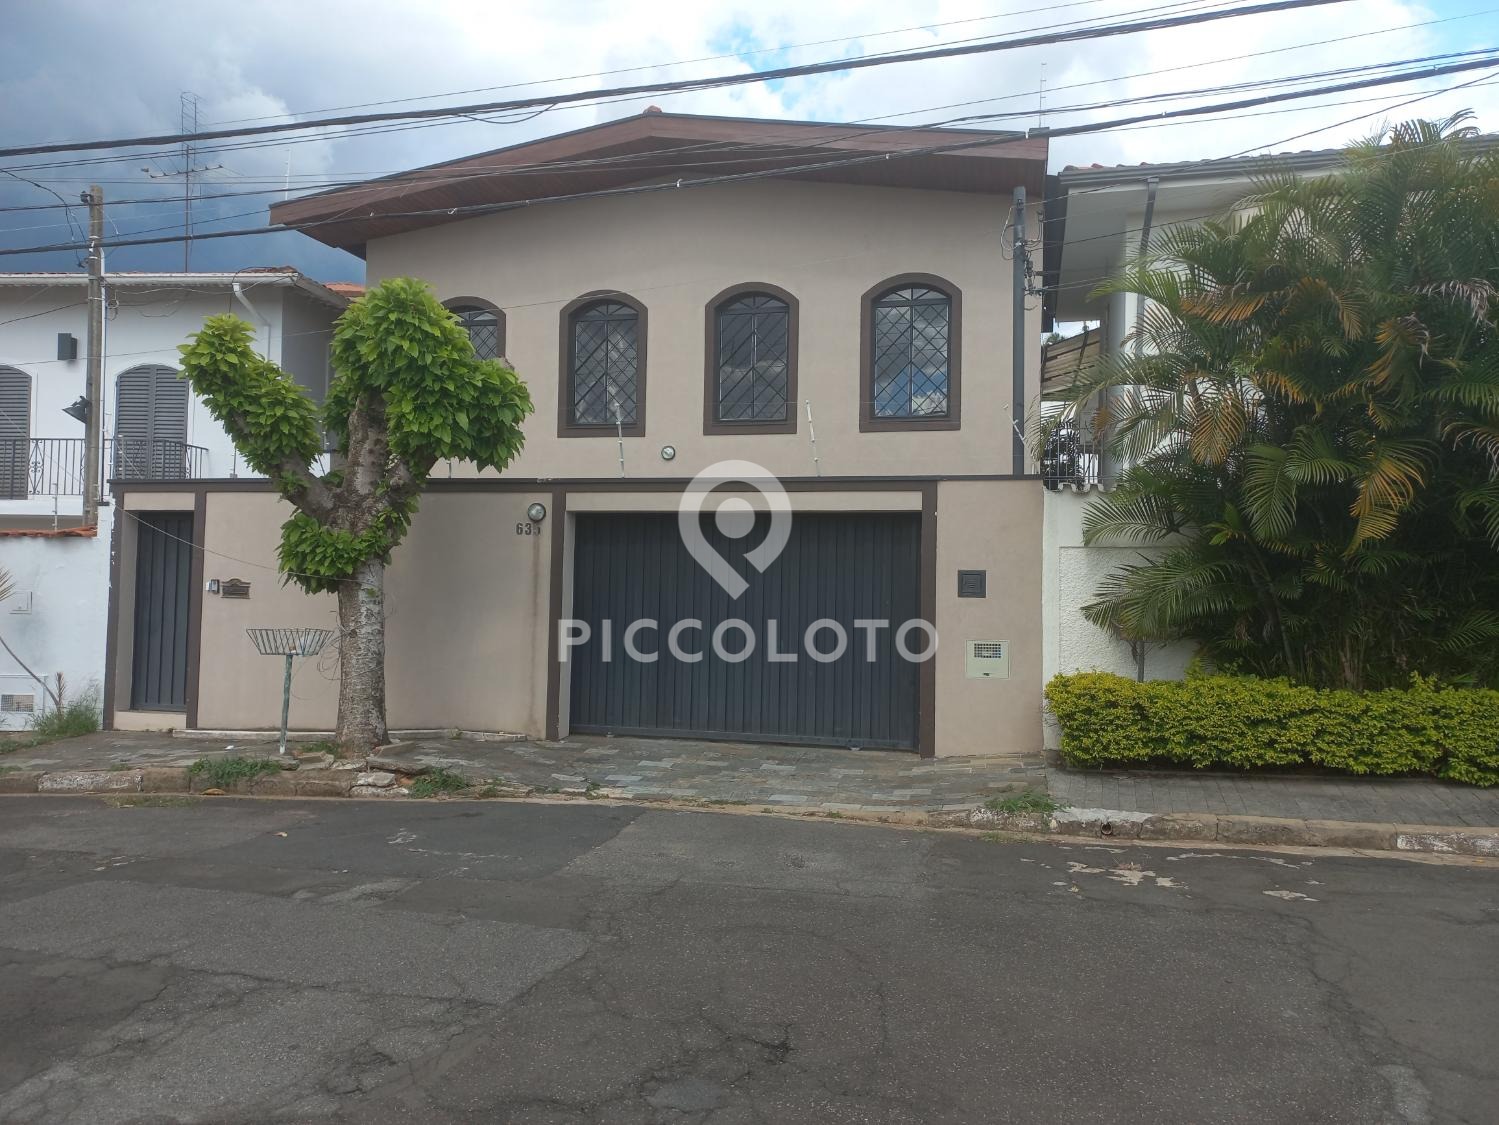 Piccoloto -Casa à venda no Jardim Guarani em Campinas